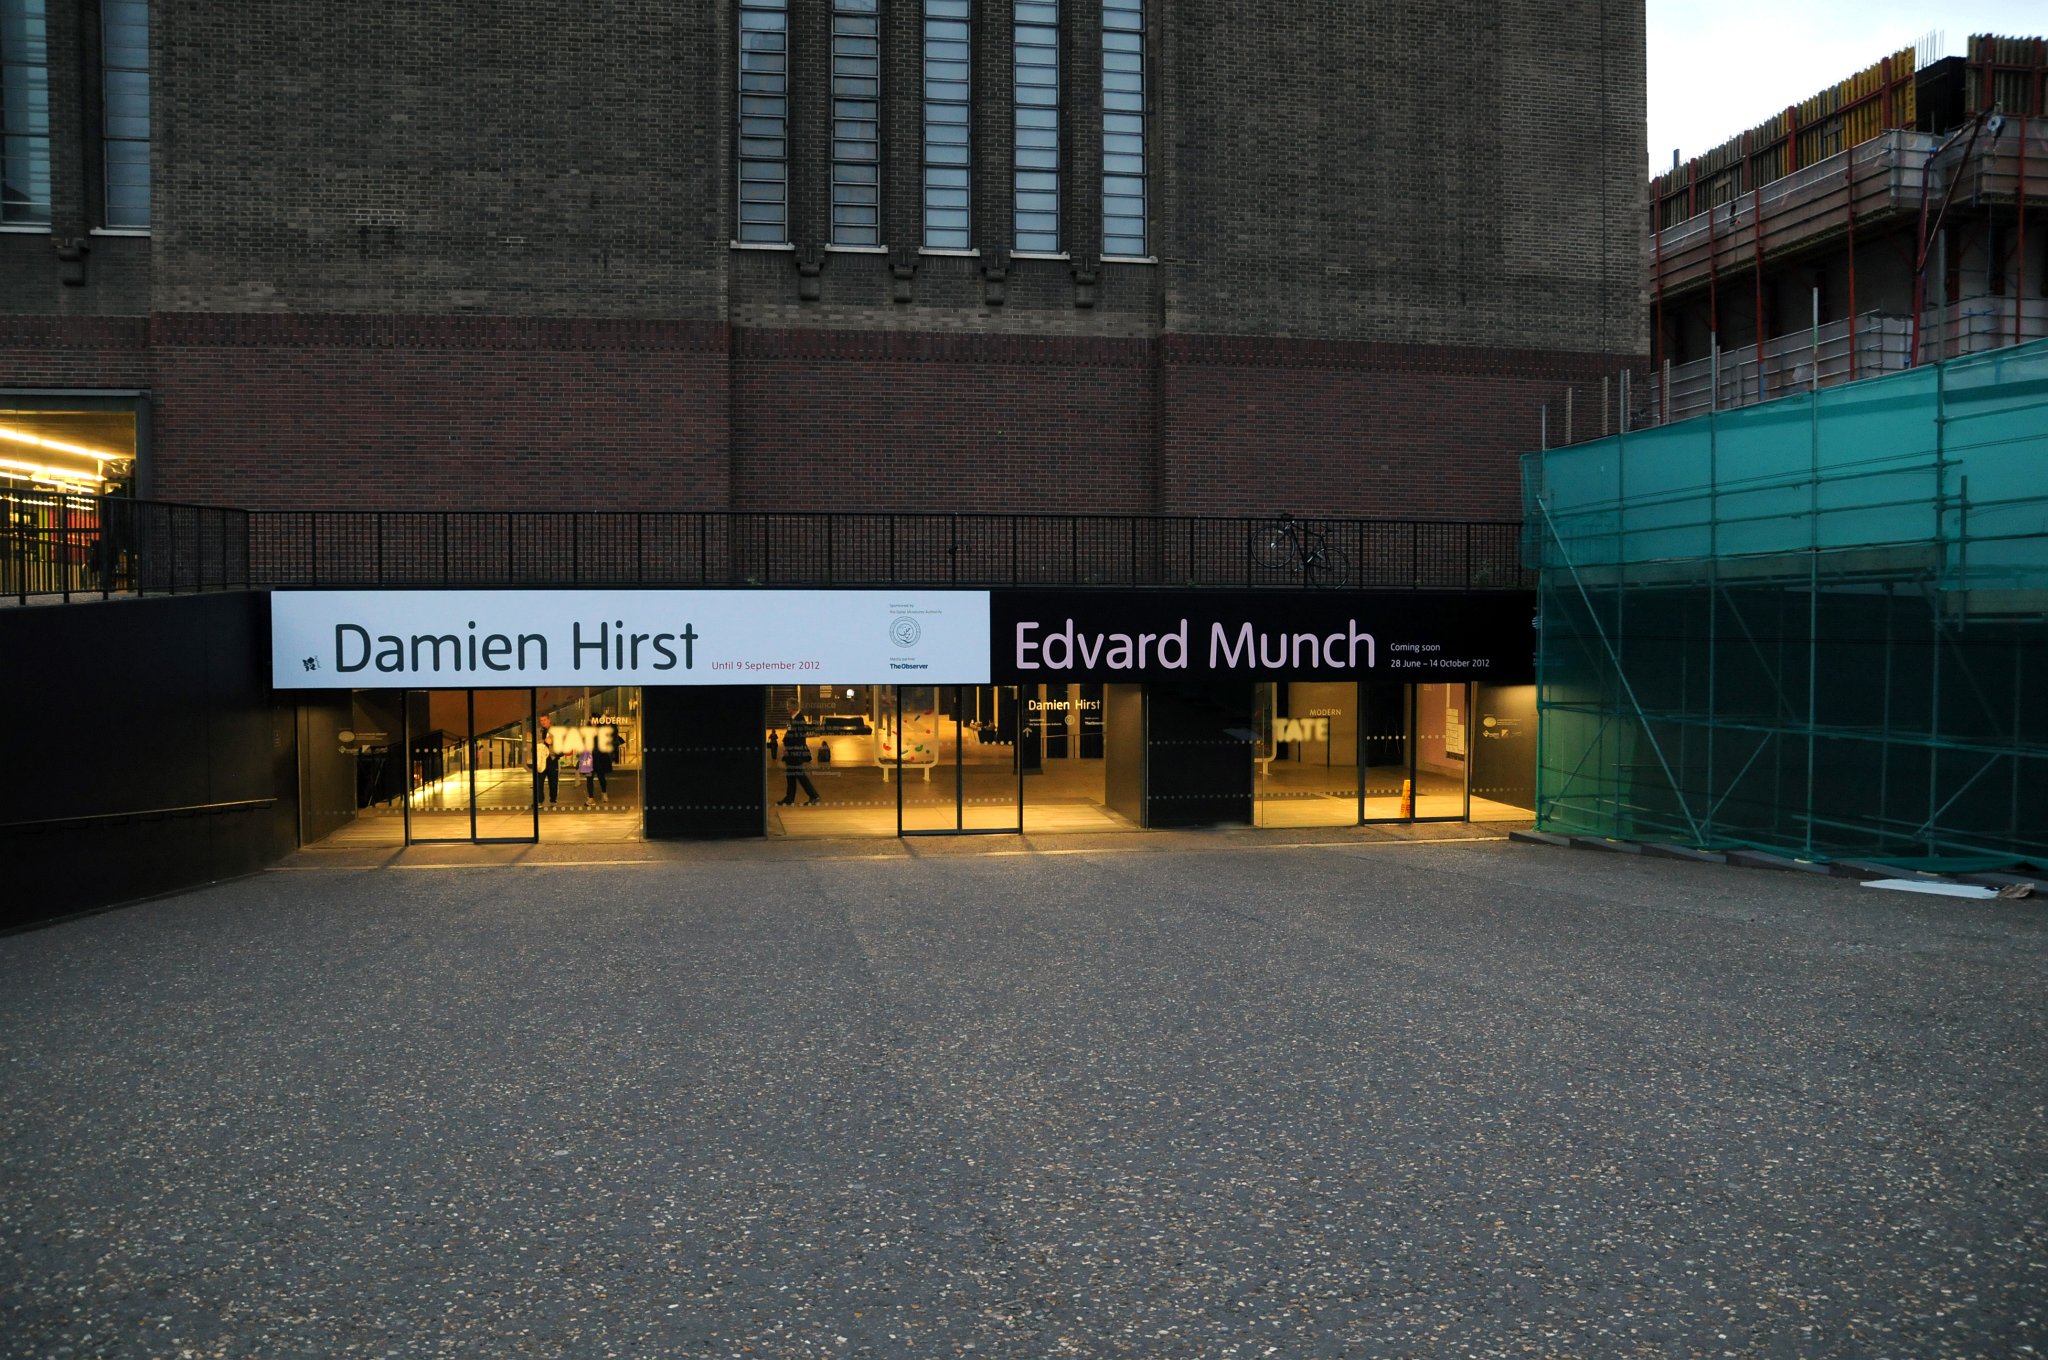 DSC_7643_1.jpg - Při naší návštěve Tate Modern v Londýně zde právě probíhala výstava Damiena Hirsta. Damien Steven Hirst (* 7. června 1965) je britský výtvarný umělec, člen významné tvůrčí skupiny Mladí britští umělci (Young British Artist, YBA). Zabývá se malířstvím, instalací, plastikou a dalšími výtvarnými technikami.Jedním z centrálních Hirstových témat je smrt. Proslavil se sérií skutečných zvířat, např. koně či krávy, naložených do formaldehydu. Fyzická nemožnost smrti v mysli někoho živého (1991), jež představuje 4,3 m dlouhého žraloka tygrovaného naloženého ve formaldehydu a vystaveného ve vitríně, proslavila Hirsta na mezinárodní scéně a stala se symbolem Mladých britských umělců po celém světě.